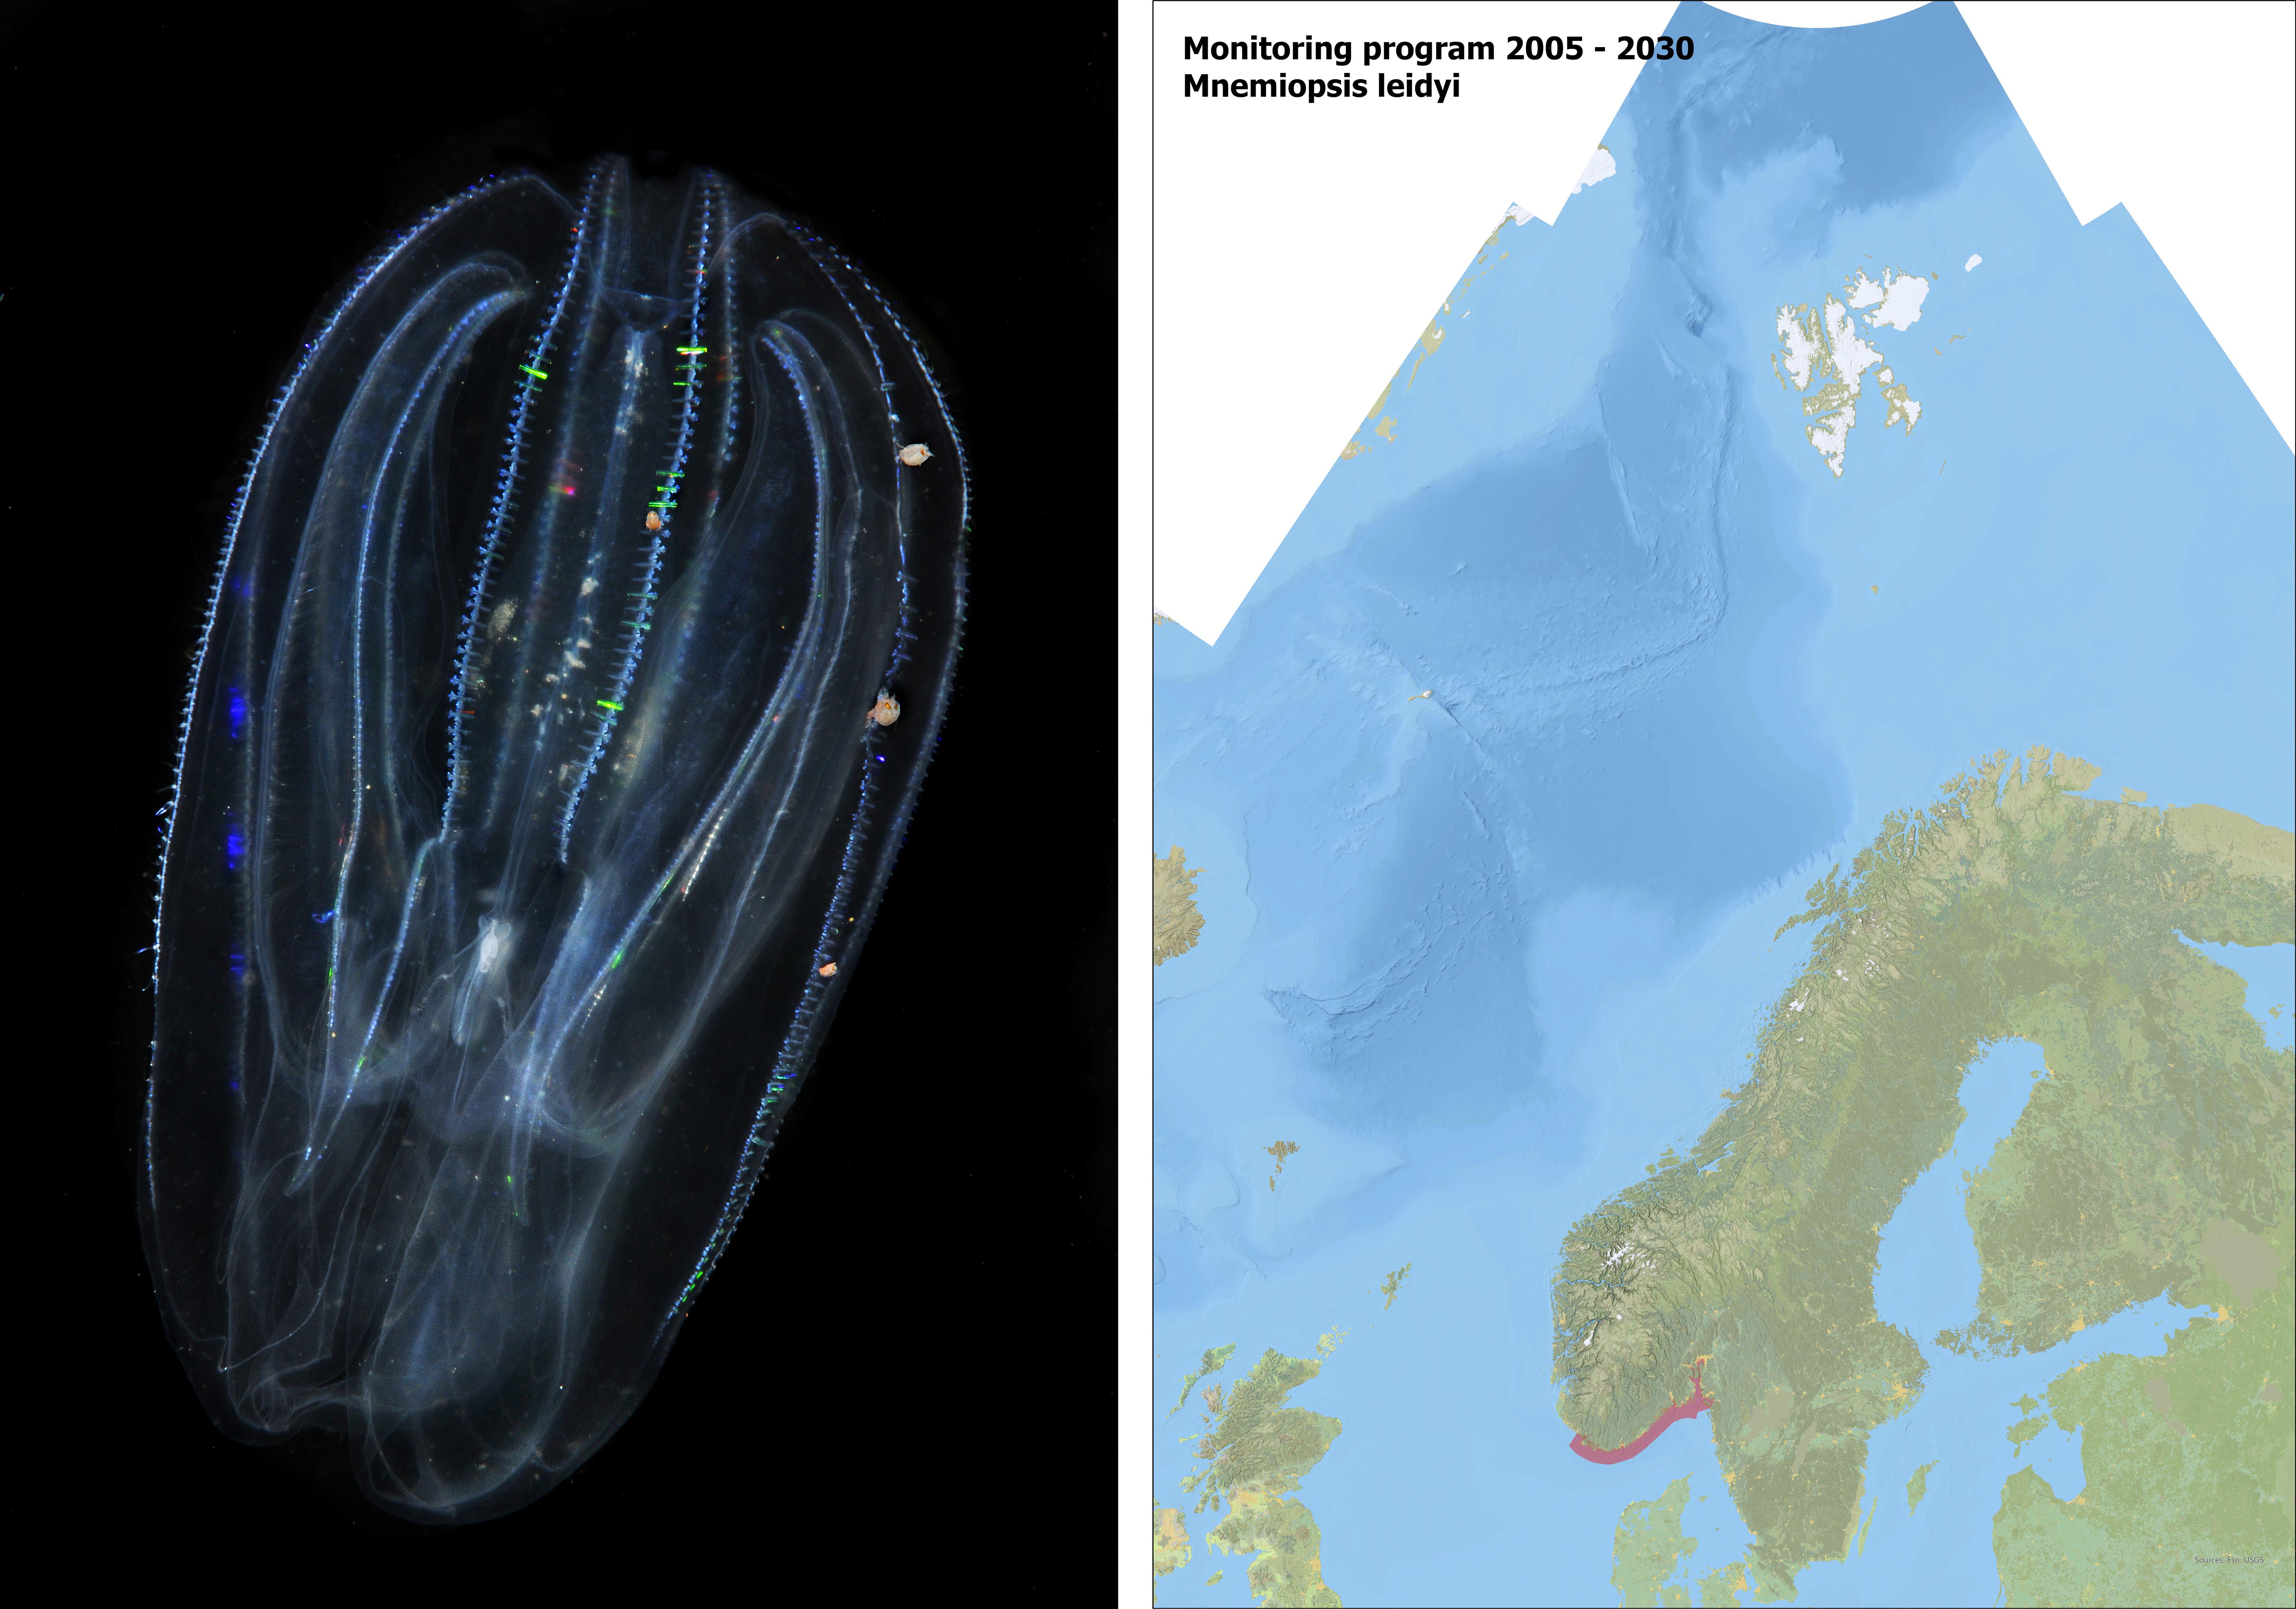 Bildet til venstre Mnemiopsis leidyi, kartet til høyre viser hvro arten blir overvåket 